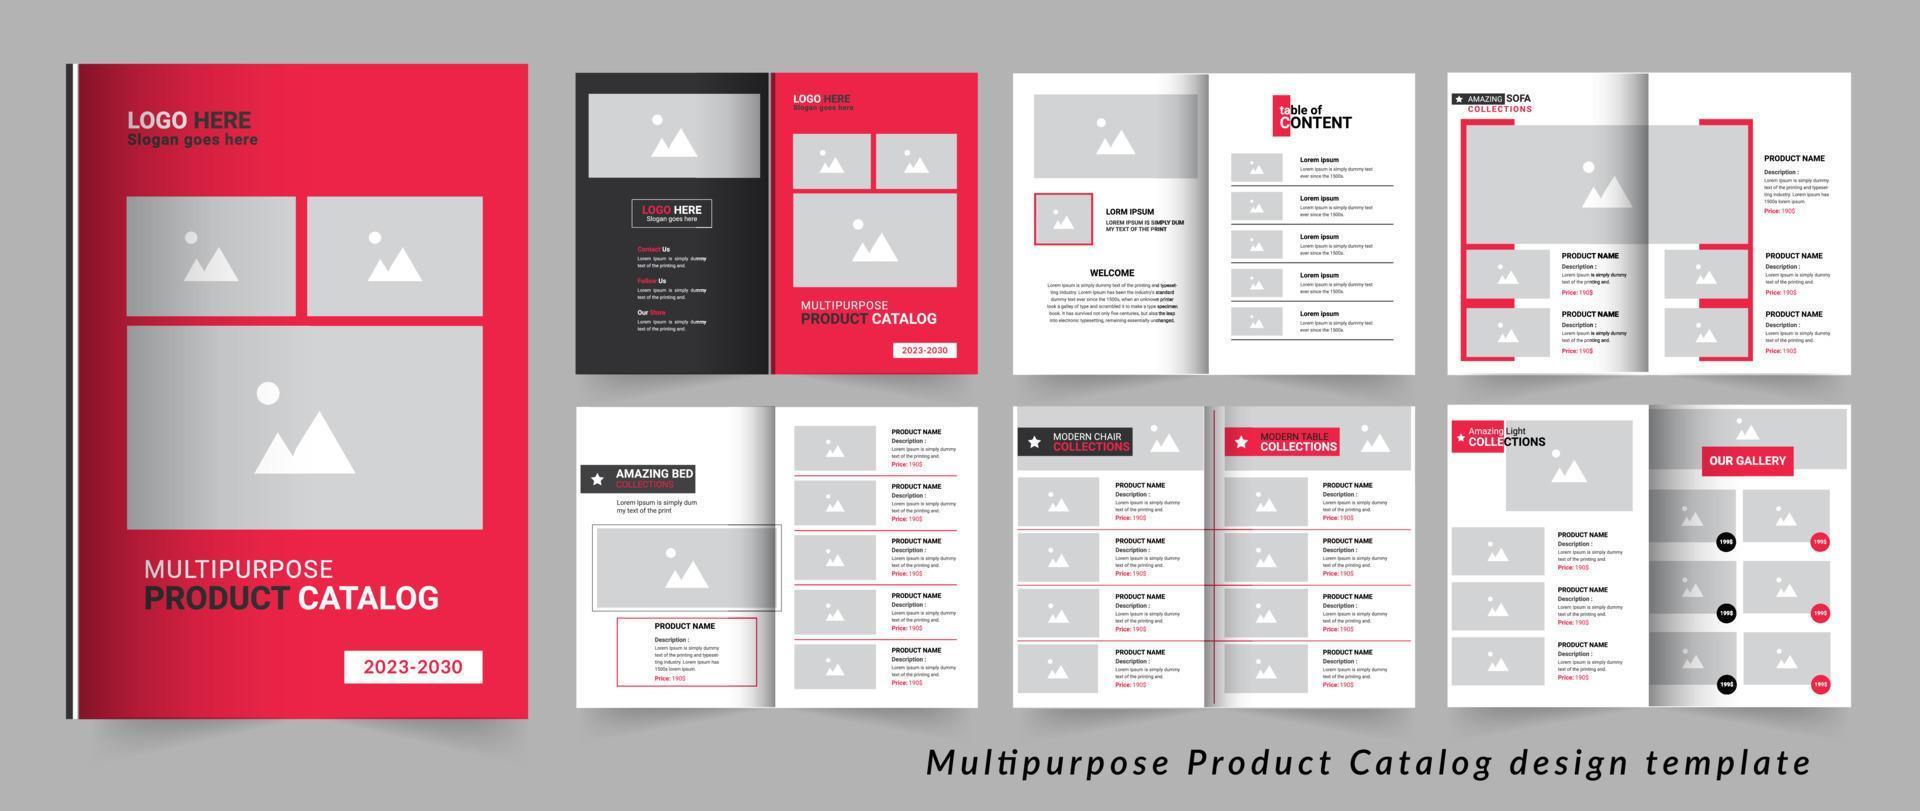 plantilla de diseño de catálogo de productos multipropósito vector